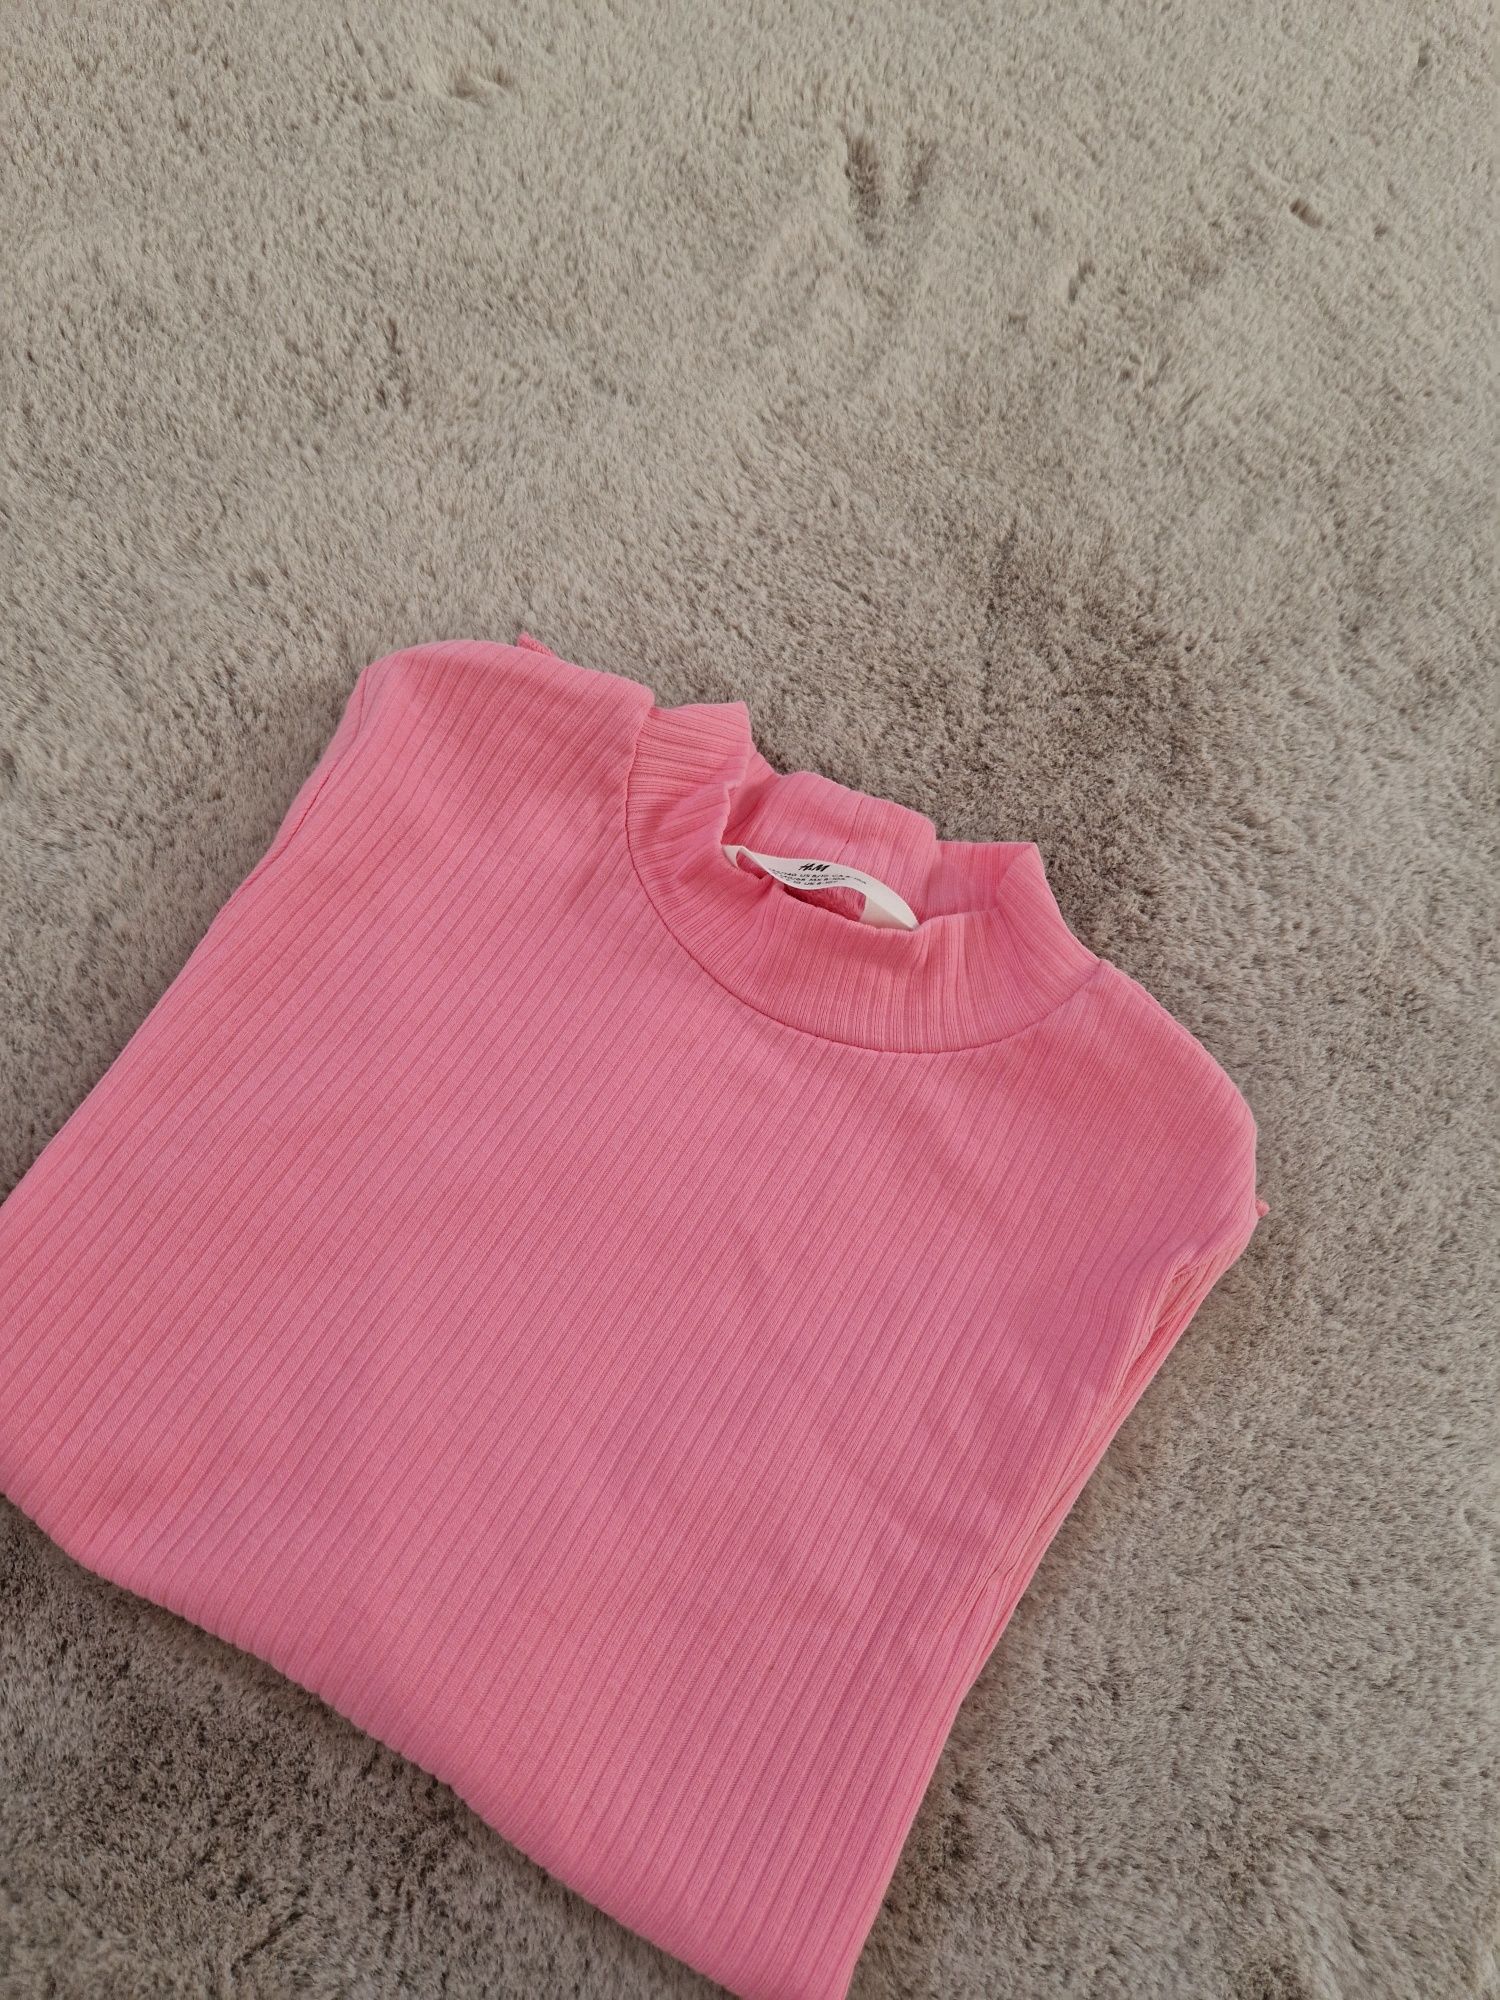 Bluzka h&m 134 cm 8-10 lat różowa nowa